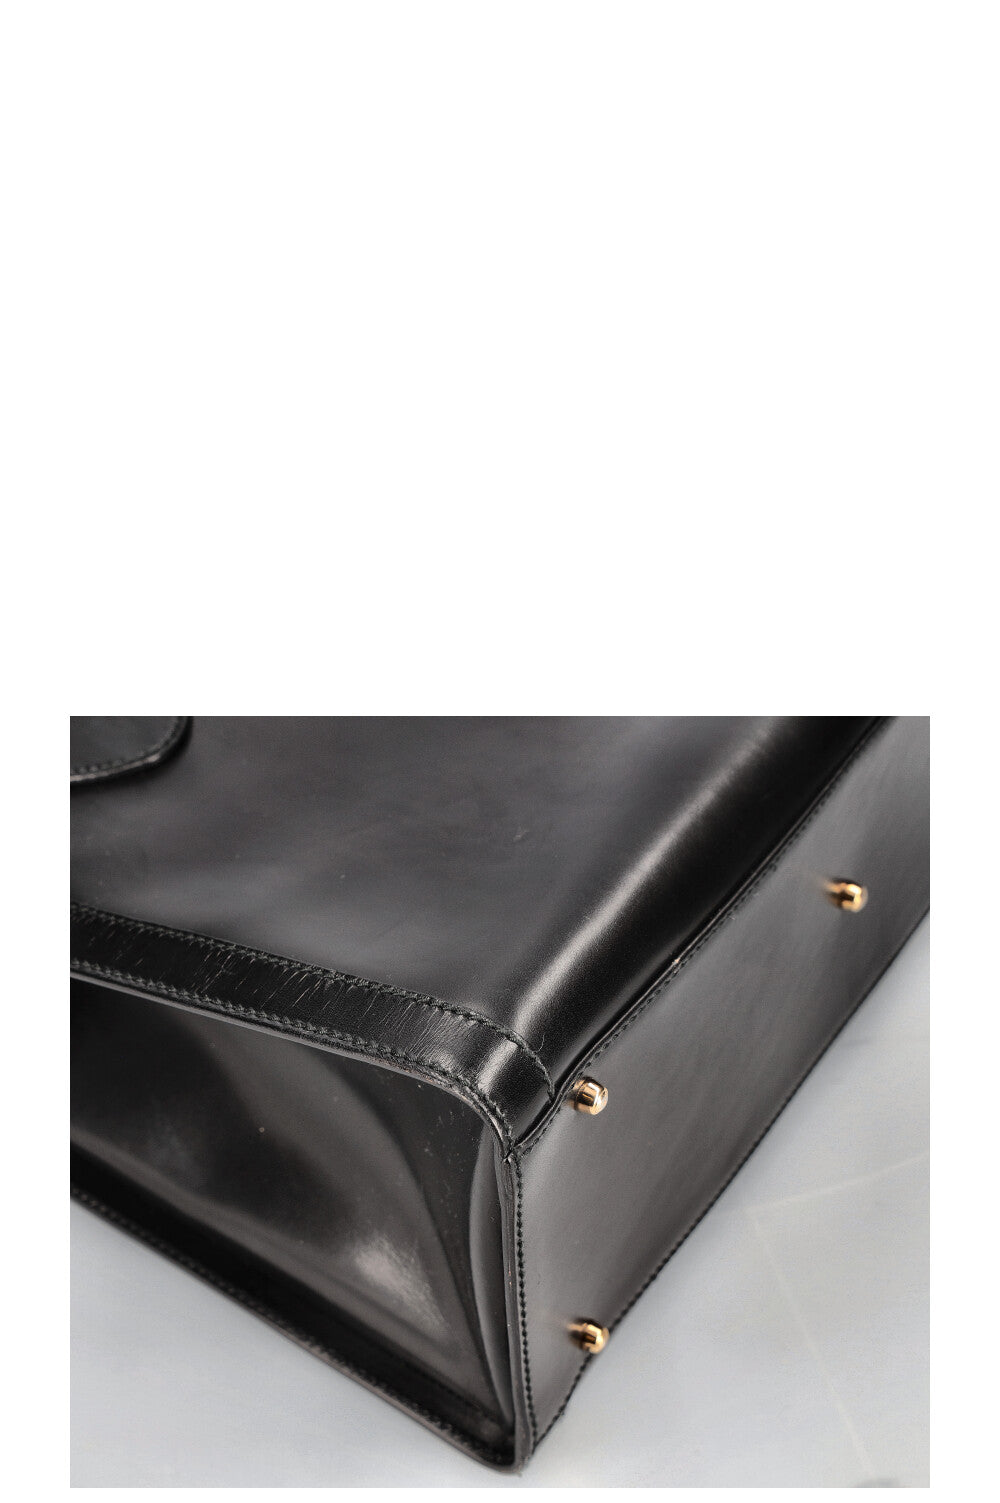 GUCCI Vintage Diana Handbag Black